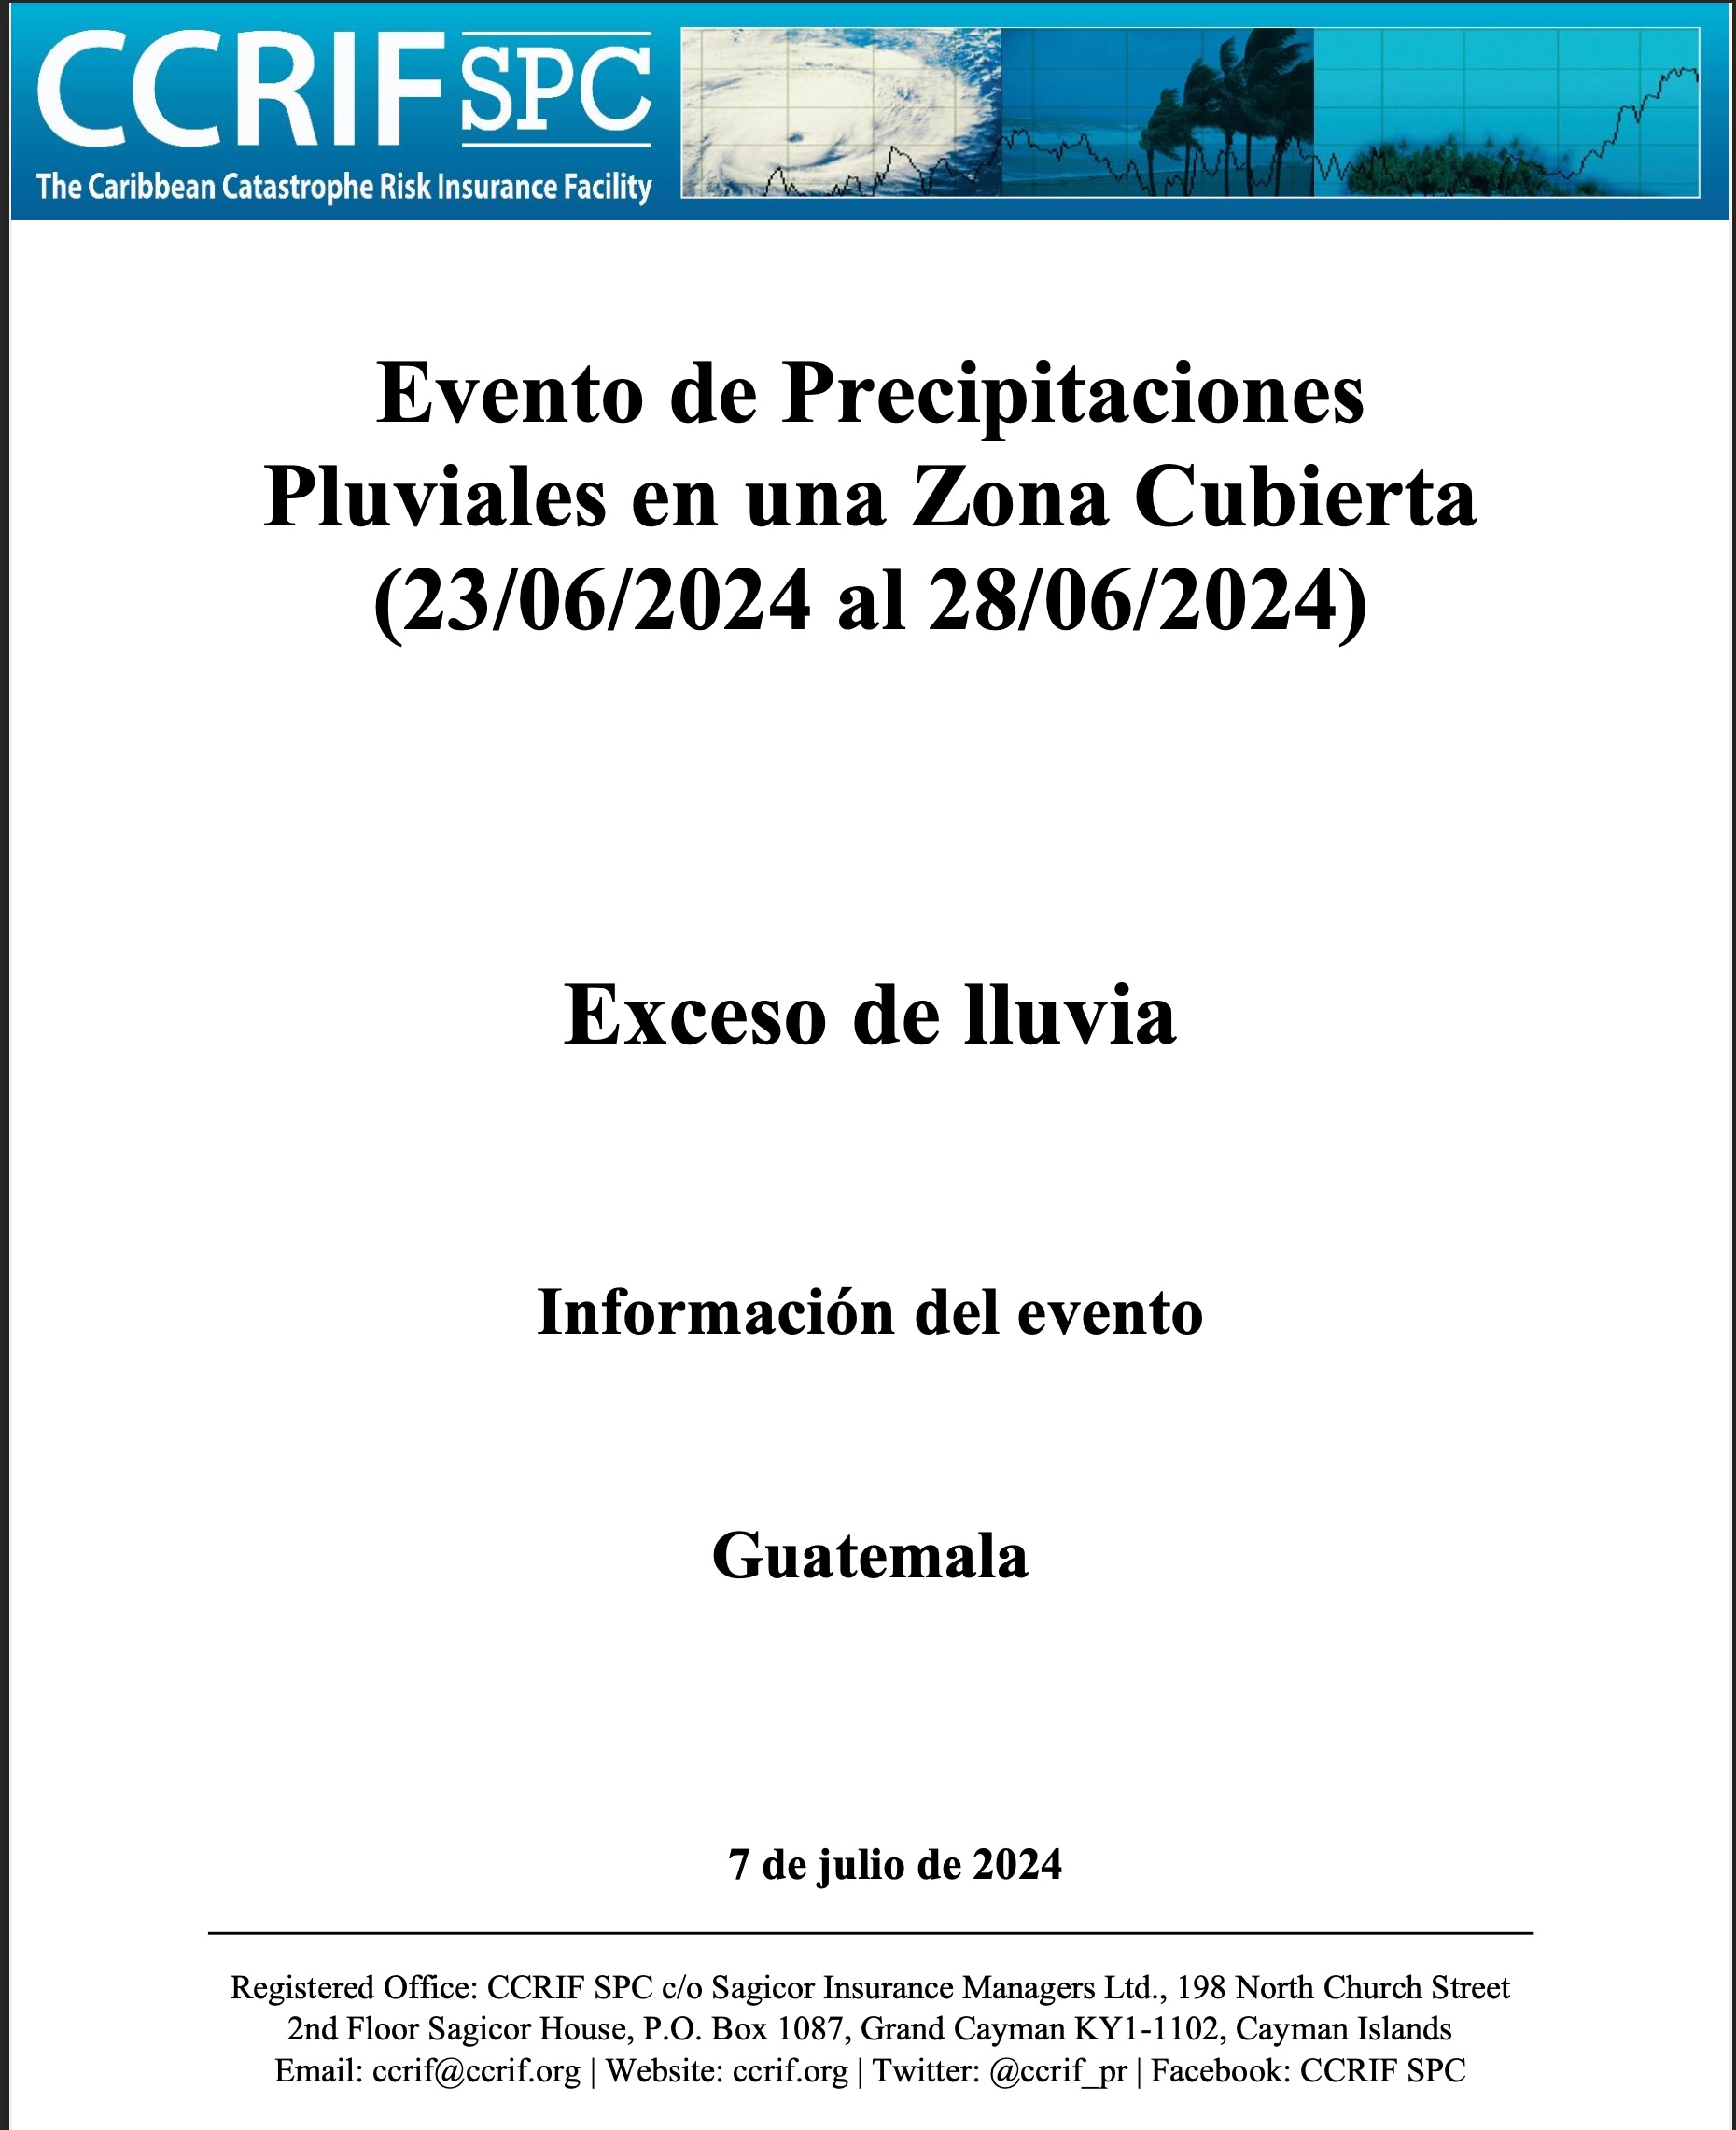 Información del evento - Exceso de lluvia - Evento de Precipitaciones Pluviales en una Zona Cubierta - Guatemala - (23/06/2024 a 28/06/2024)